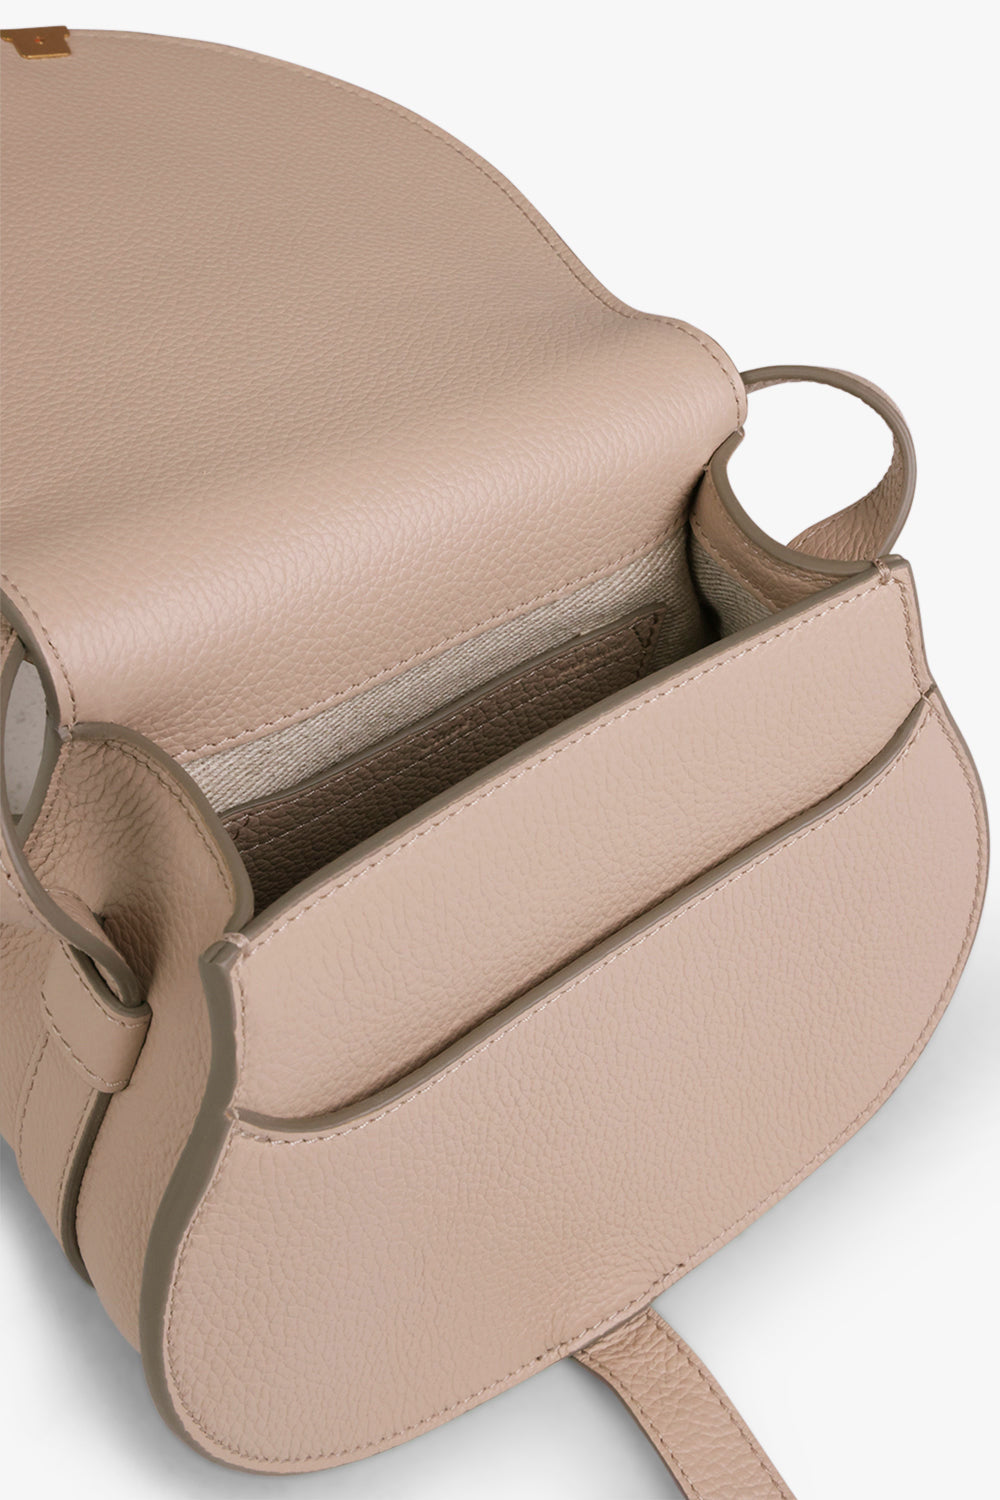 CHLOE BAGS BEIGE MARCIE SMALL BAG | NOMAD BEIGE